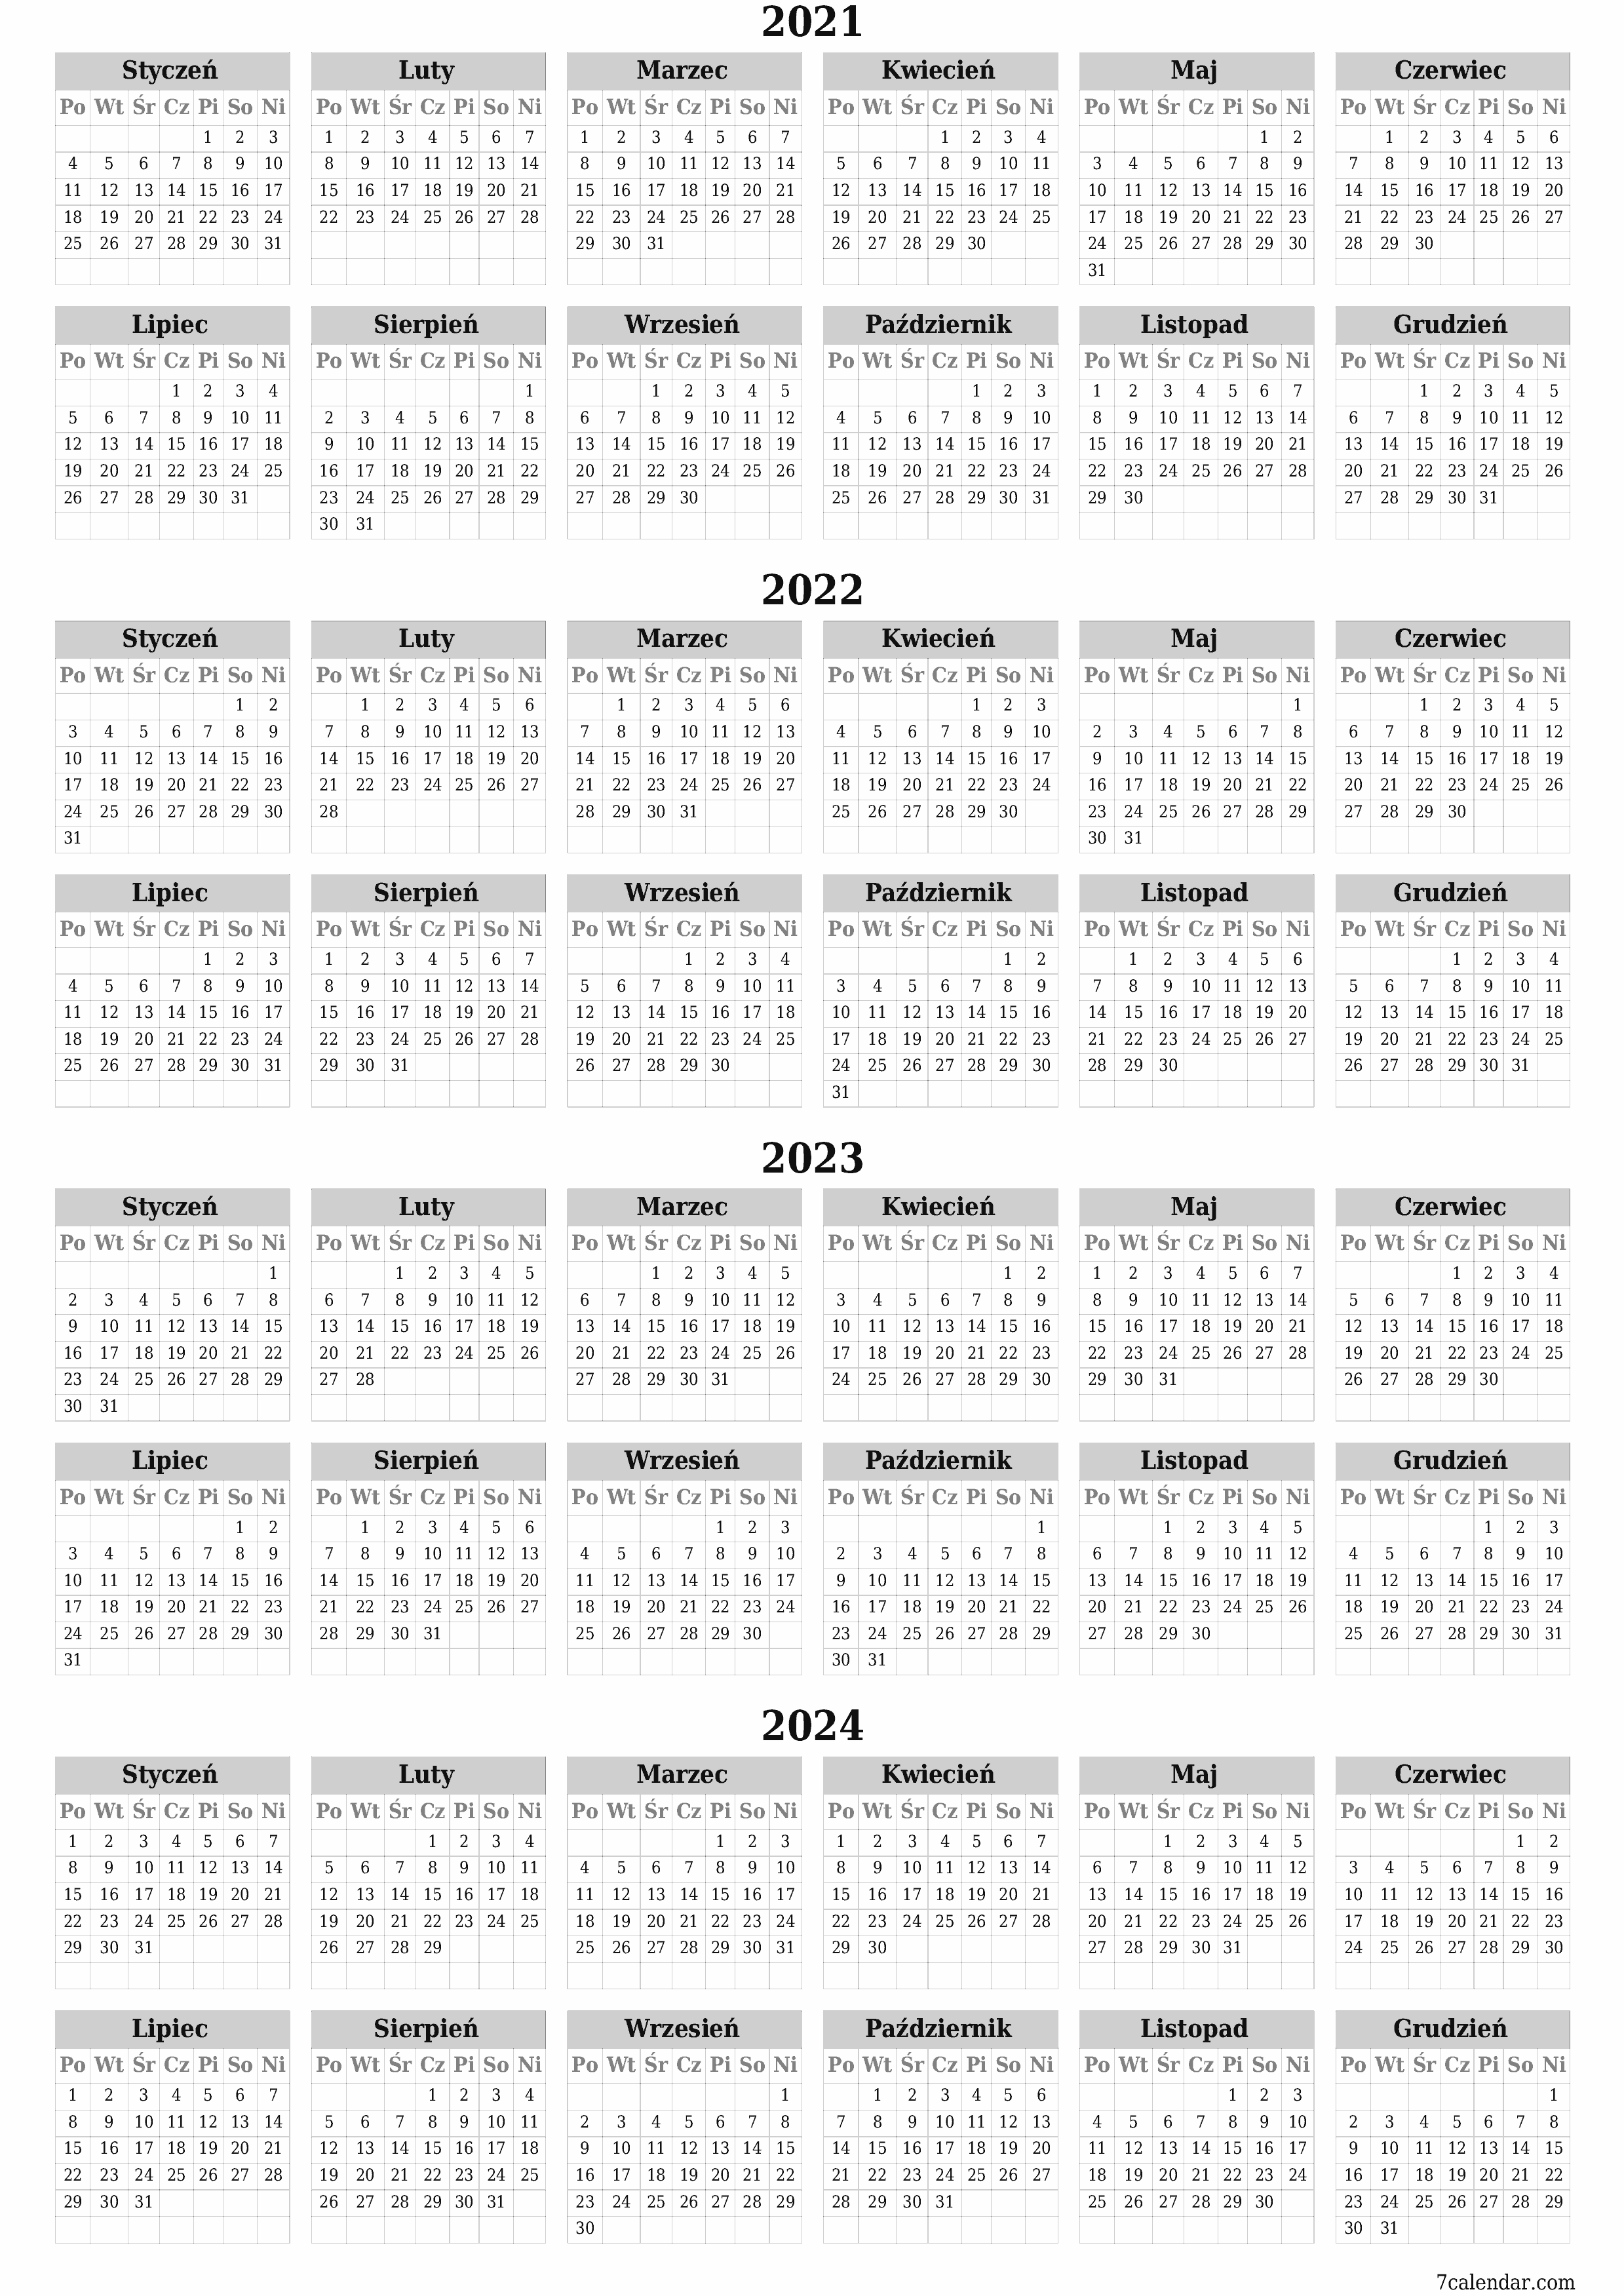  do druku ścienny szablon a darmowy pionowy Yearly kalendarz Grudzień (Gru) 2021